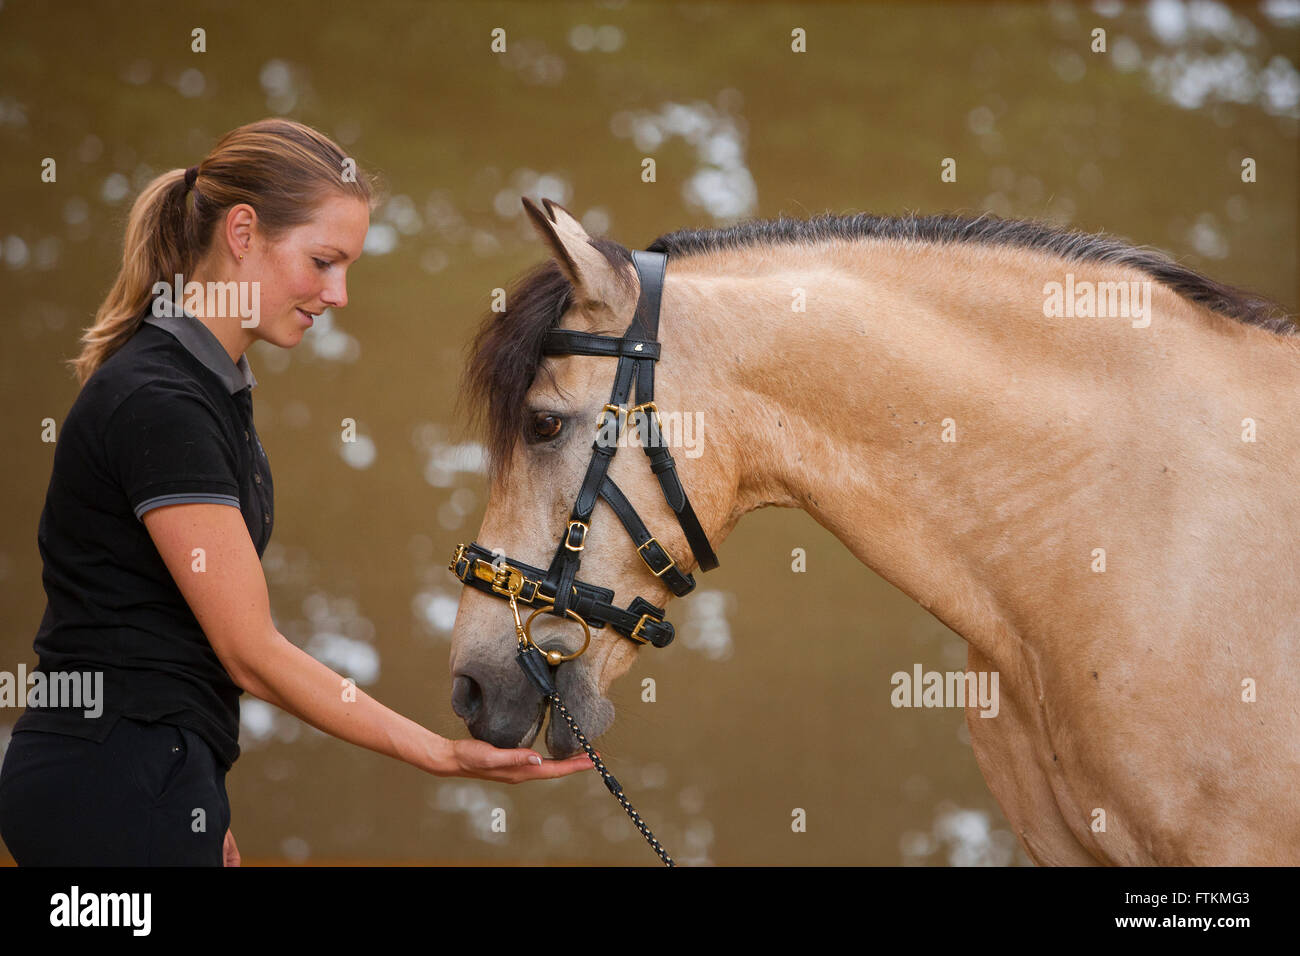 Rein spanische Pferd, andalusischen. Frau Pferd trägt einen Ausfallschritt Kappzaum eine Belohnung geben. Deutschland Stockfoto